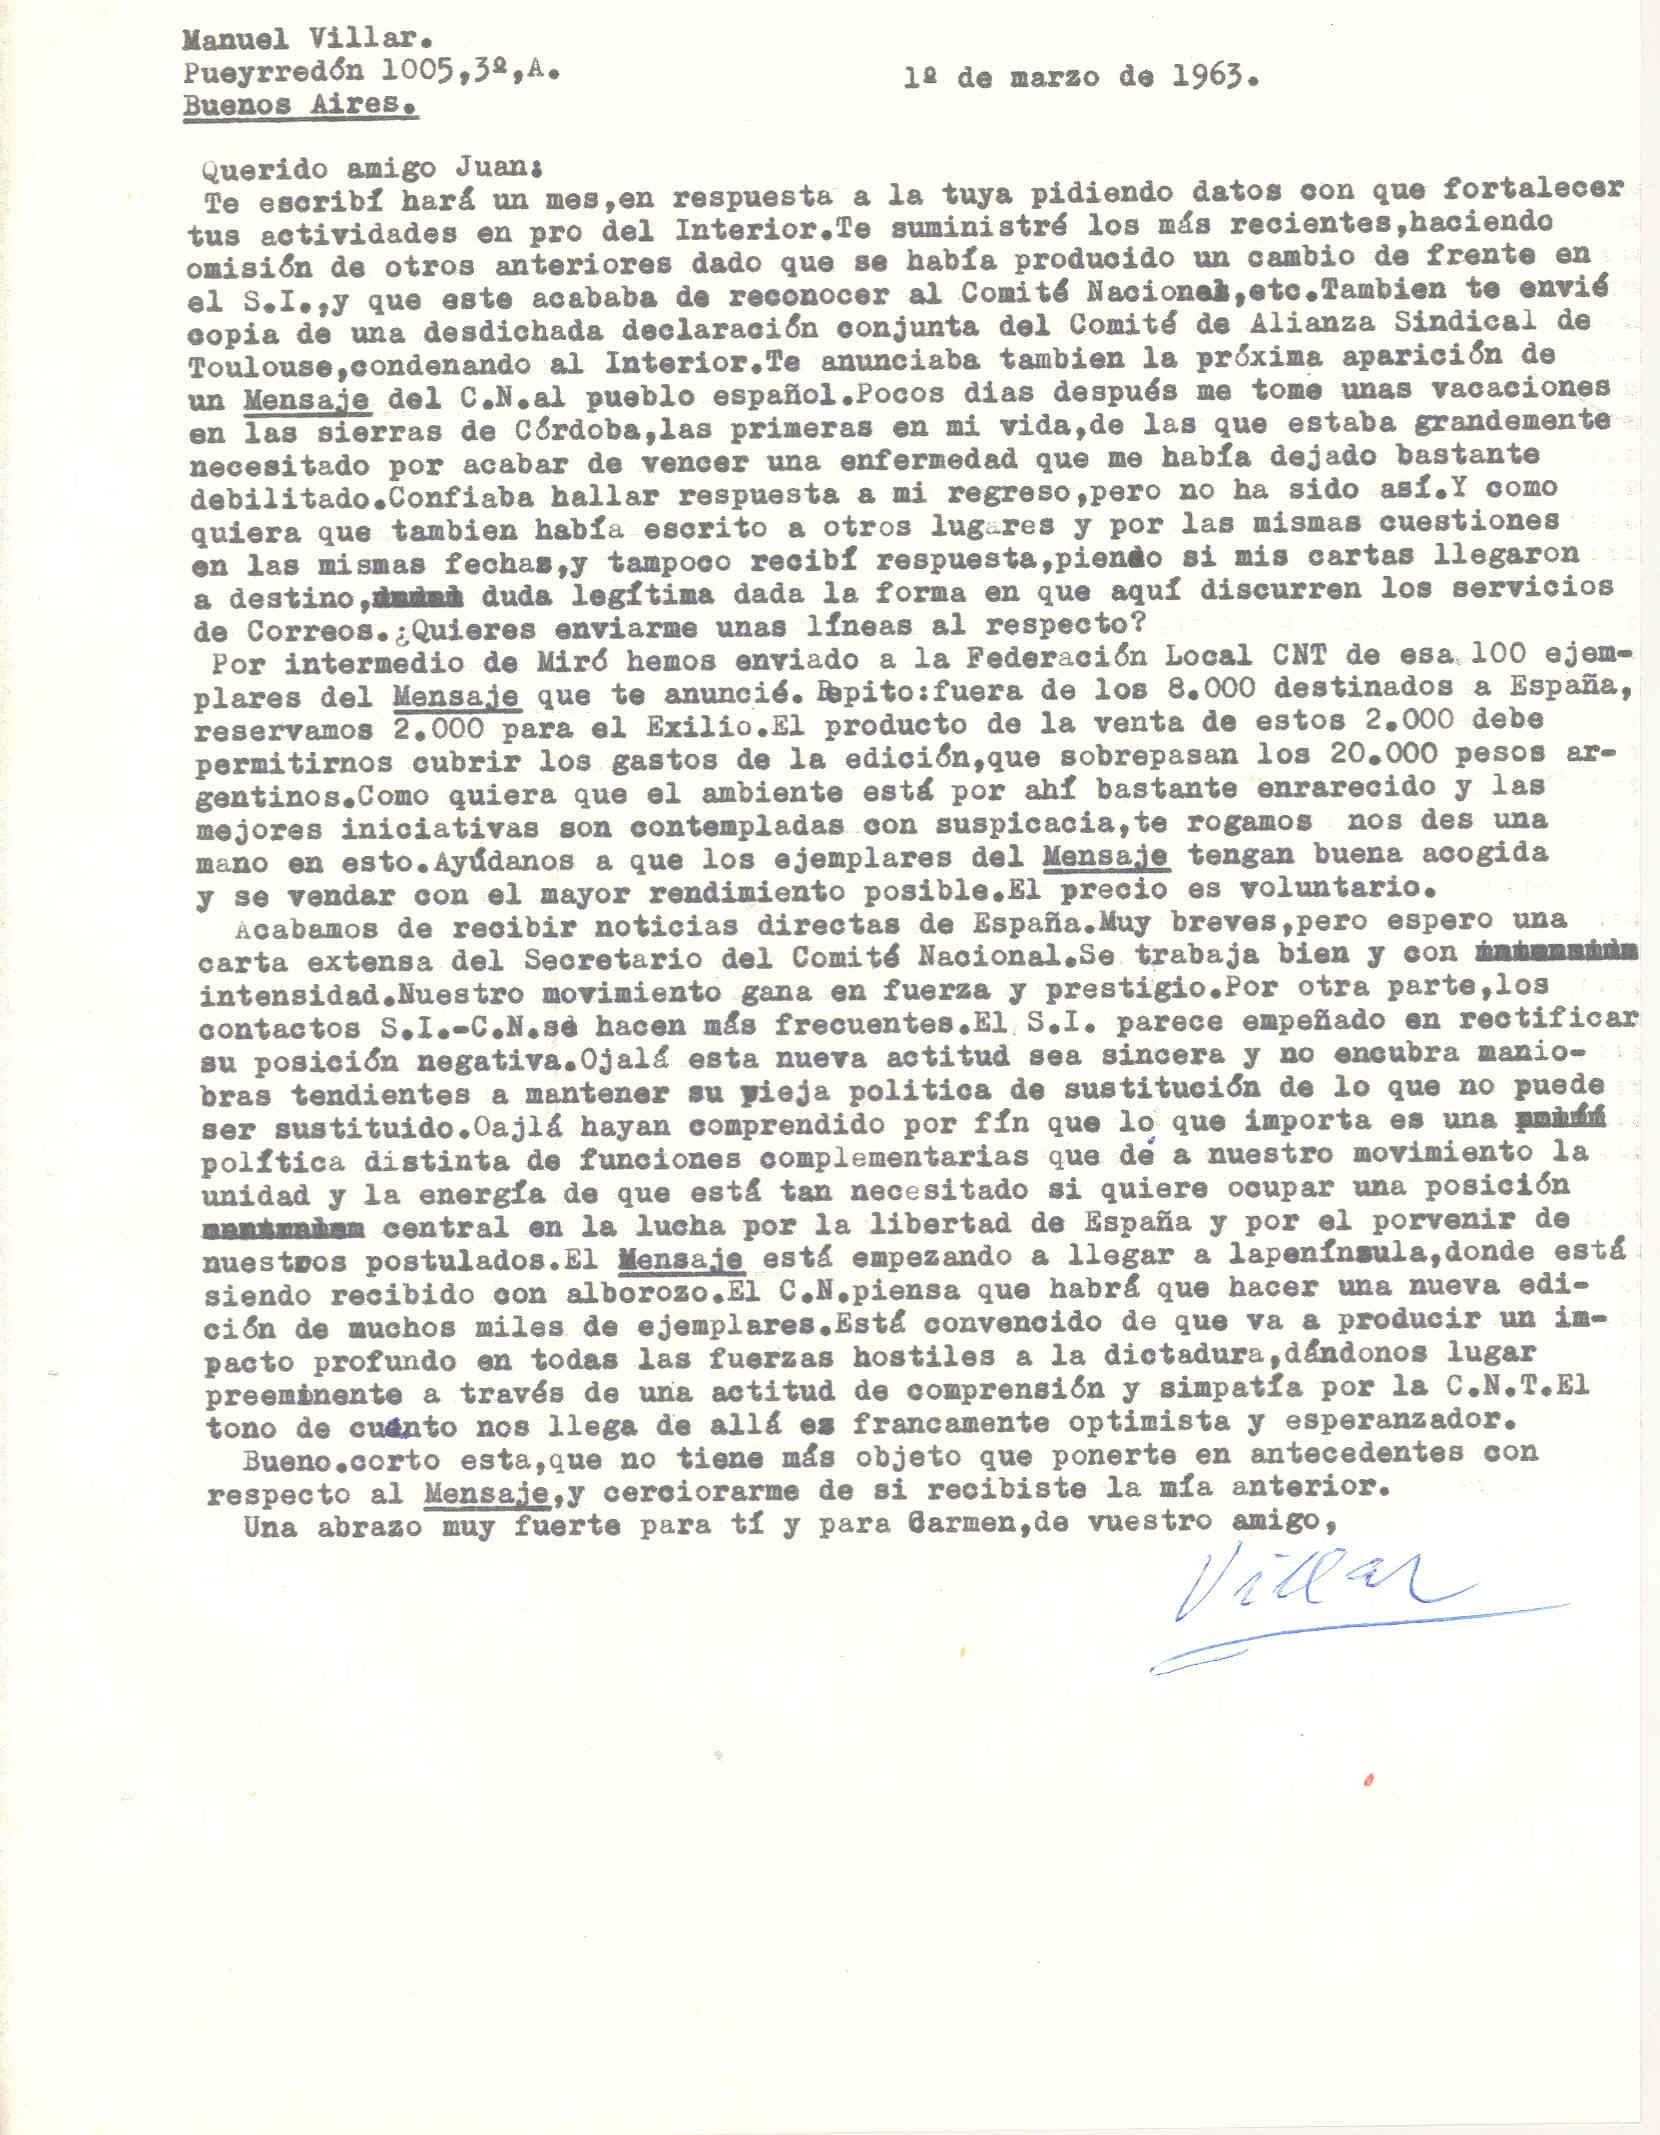 Carta de Manuel Villar comentando no recibir respuesta a sus cartas, el precio de los ejemplares del Mensaje del CNT al pueblo español y su acogida